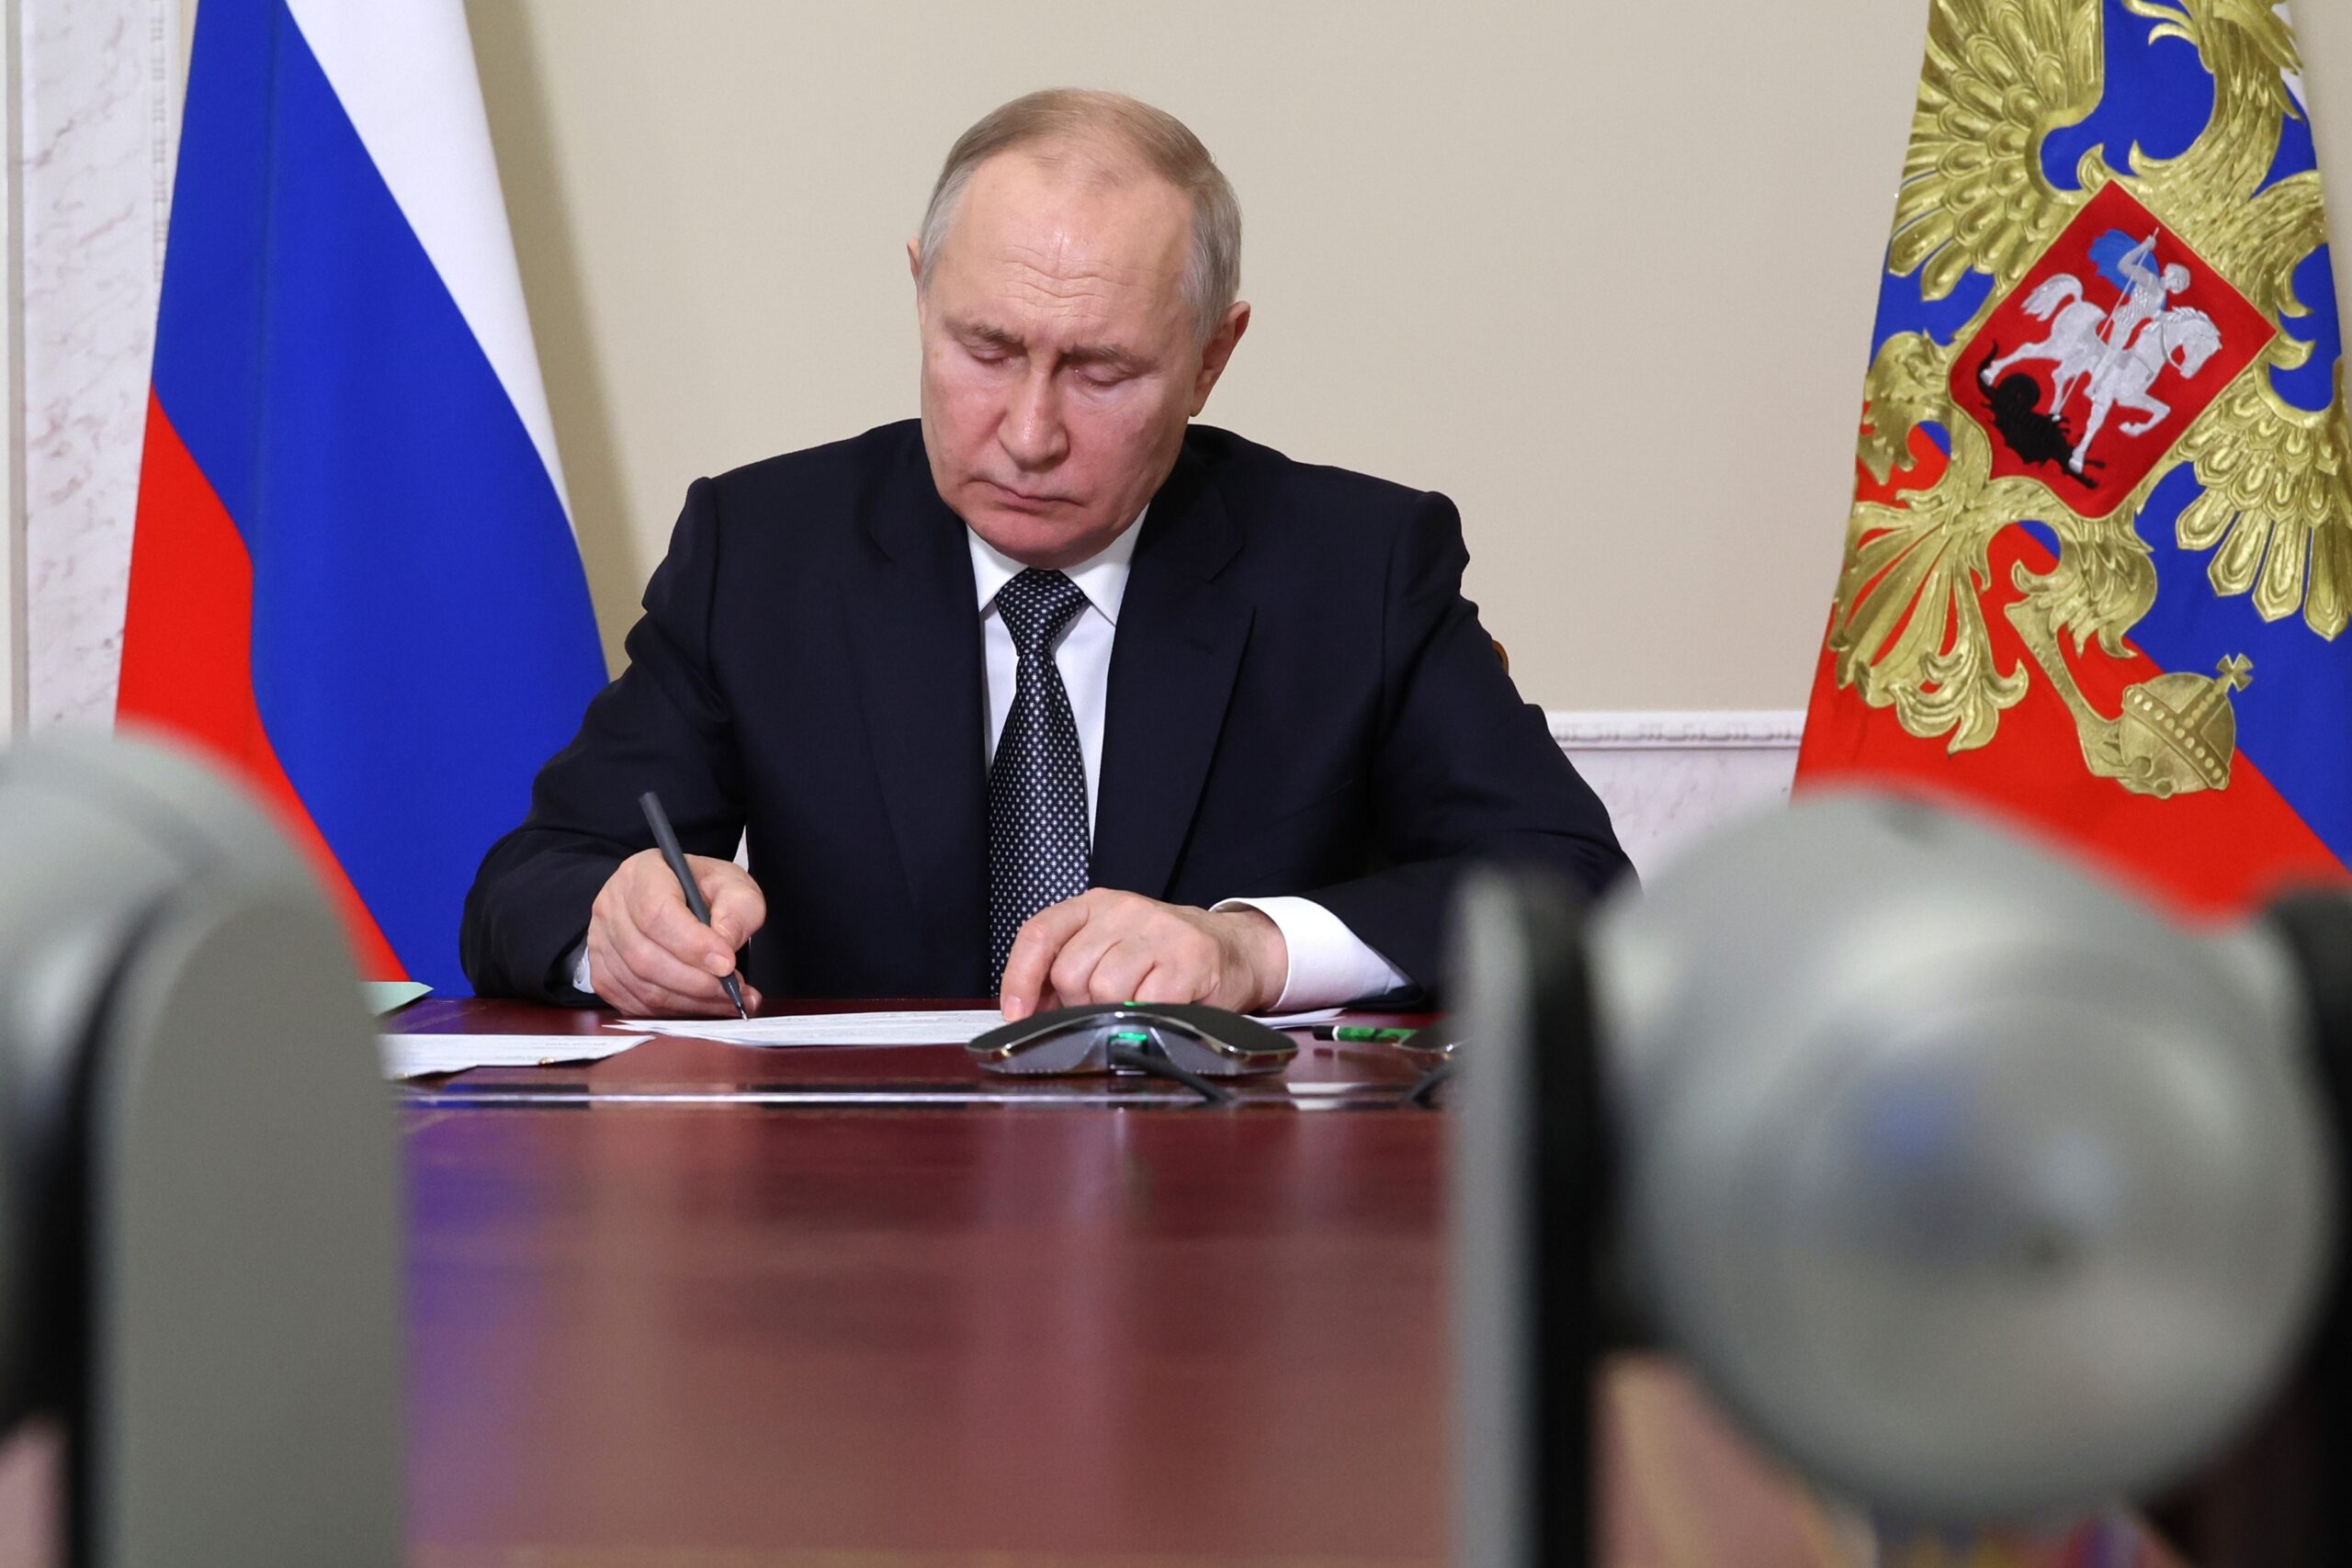 Κατηγορία Ρωσίας προς ΗΠΑ για την απόπειρα κατά του Πούτιν – Λευκός Οίκος: «Τελείως αβάσιμοι οι ισχυρισμοί»